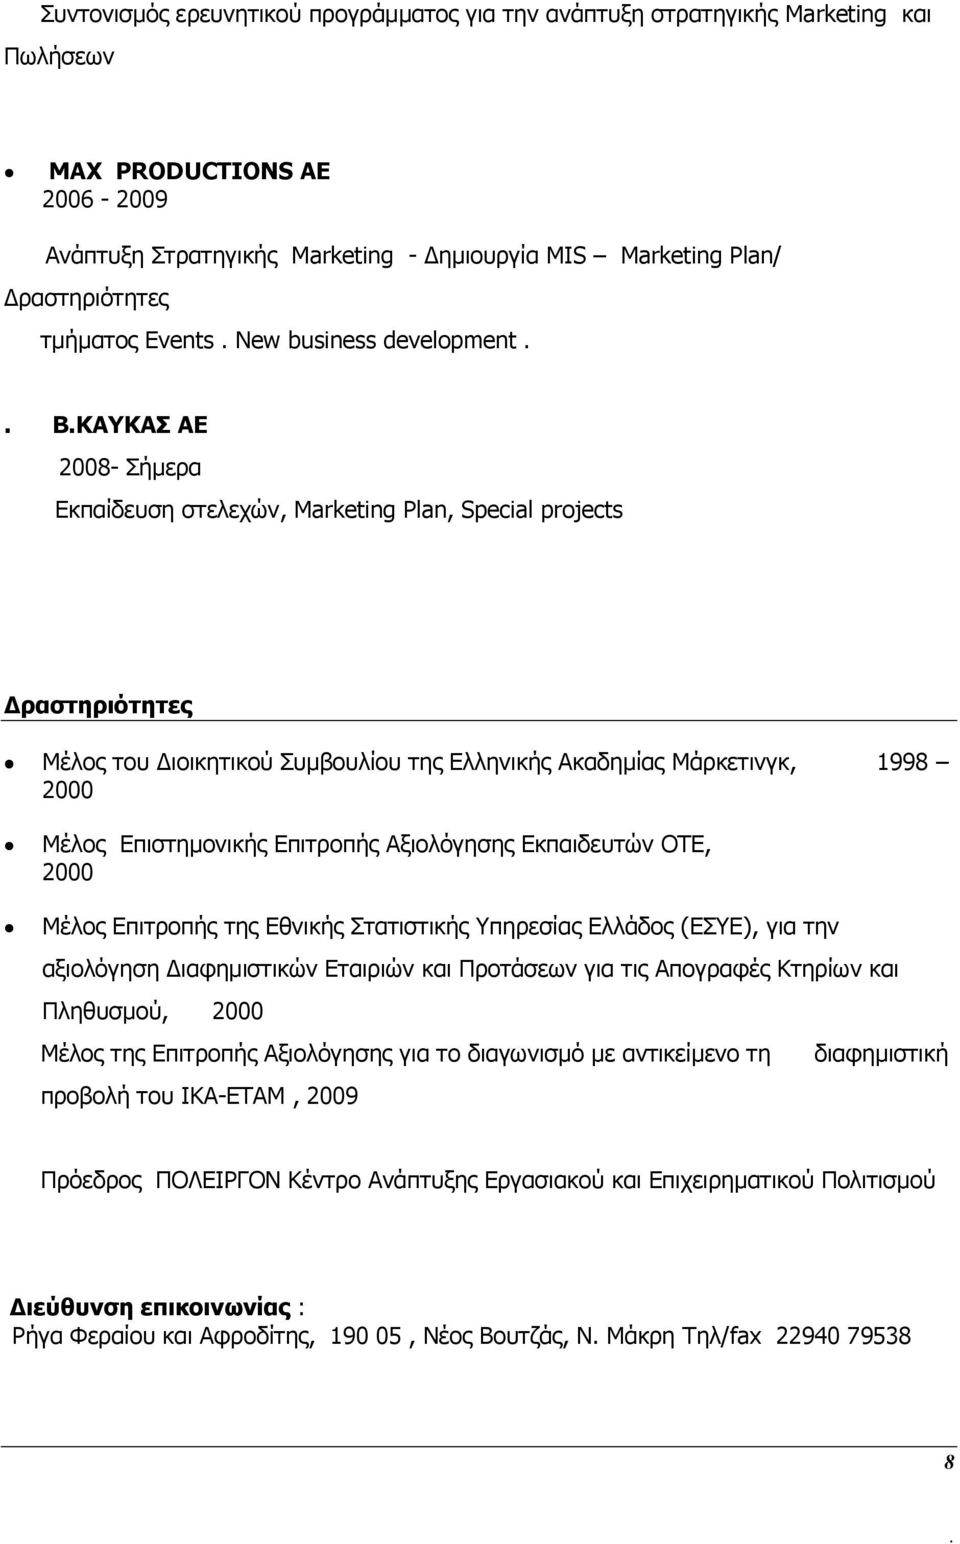 Μάρκετινγκ, 1998 2000 Μέλος Επιστημονικής Επιτροπής Αξιολόγησης Εκπαιδευτών ΟΤΕ, 2000 Μέλος Επιτροπής της Εθνικής Στατιστικής Υπηρεσίας Ελλάδος (ΕΣΥΕ), για την αξιολόγηση Διαφημιστικών Εταιριών και